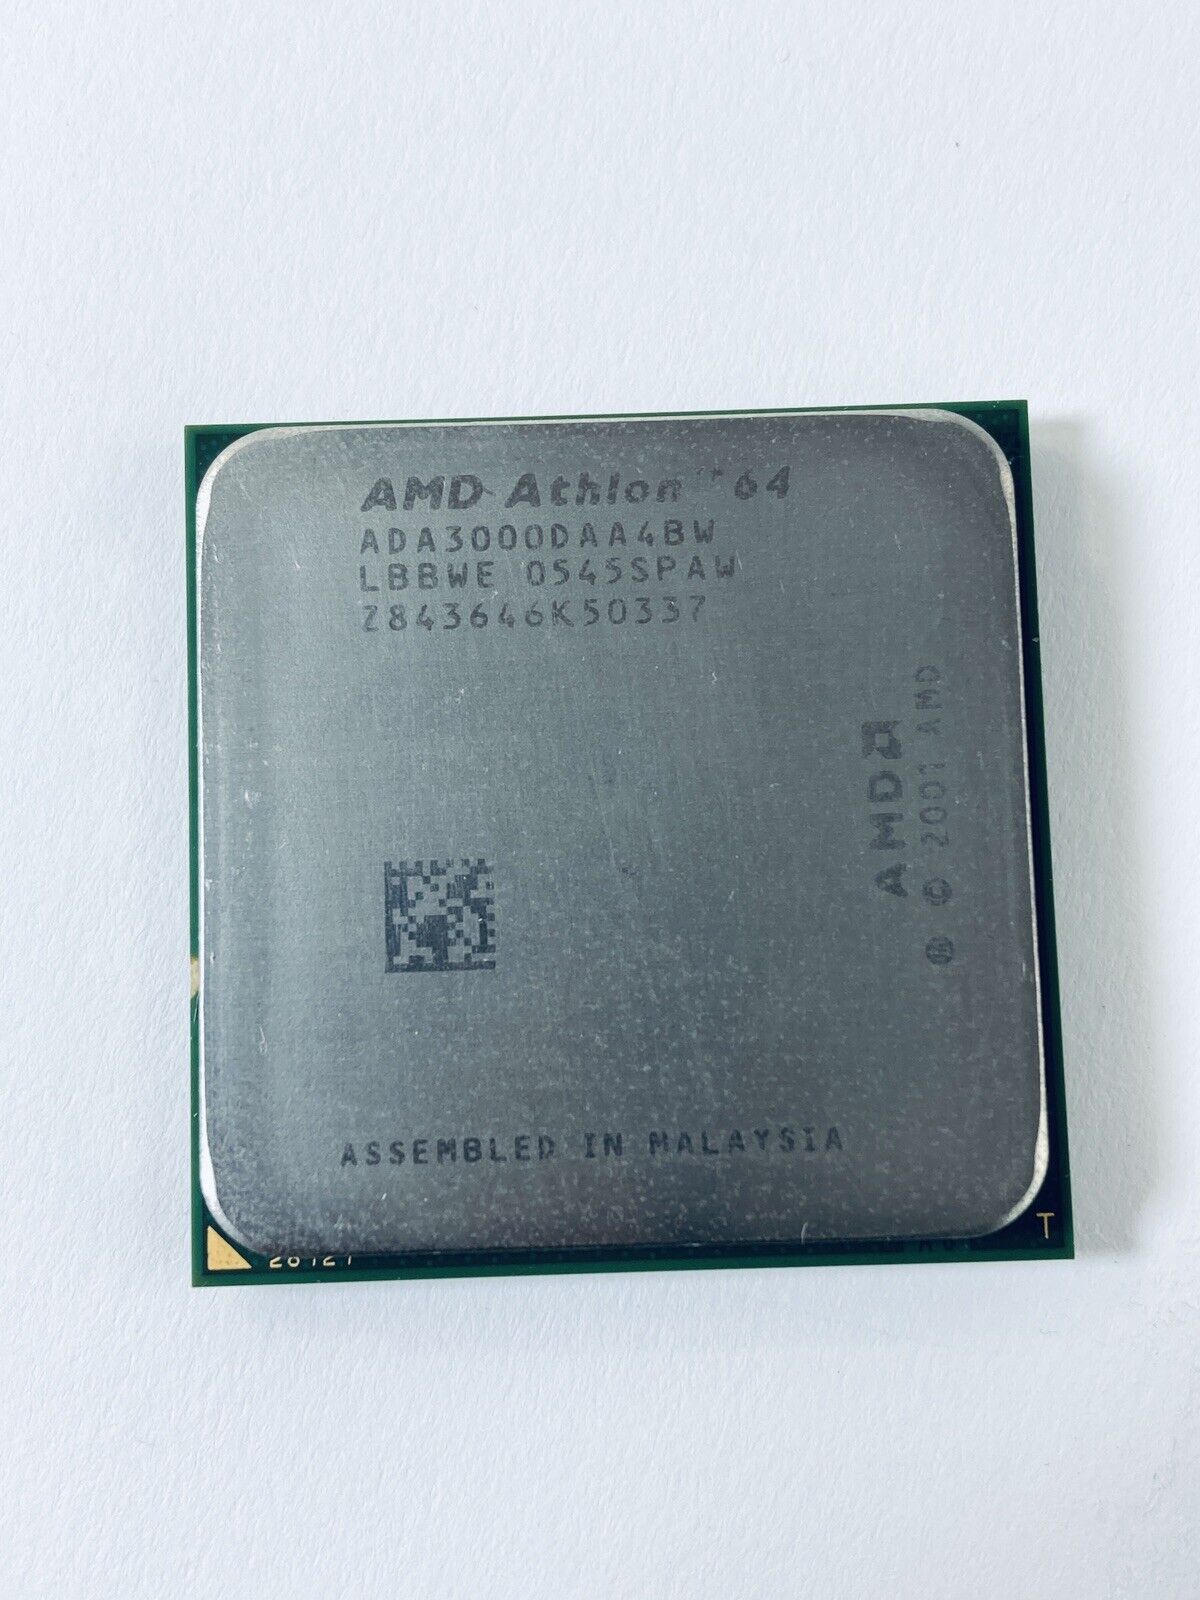 AMD Athlon 64 3000+ ADA3000DAA4BW 1.8-3.0GHz Socket 939 CPU